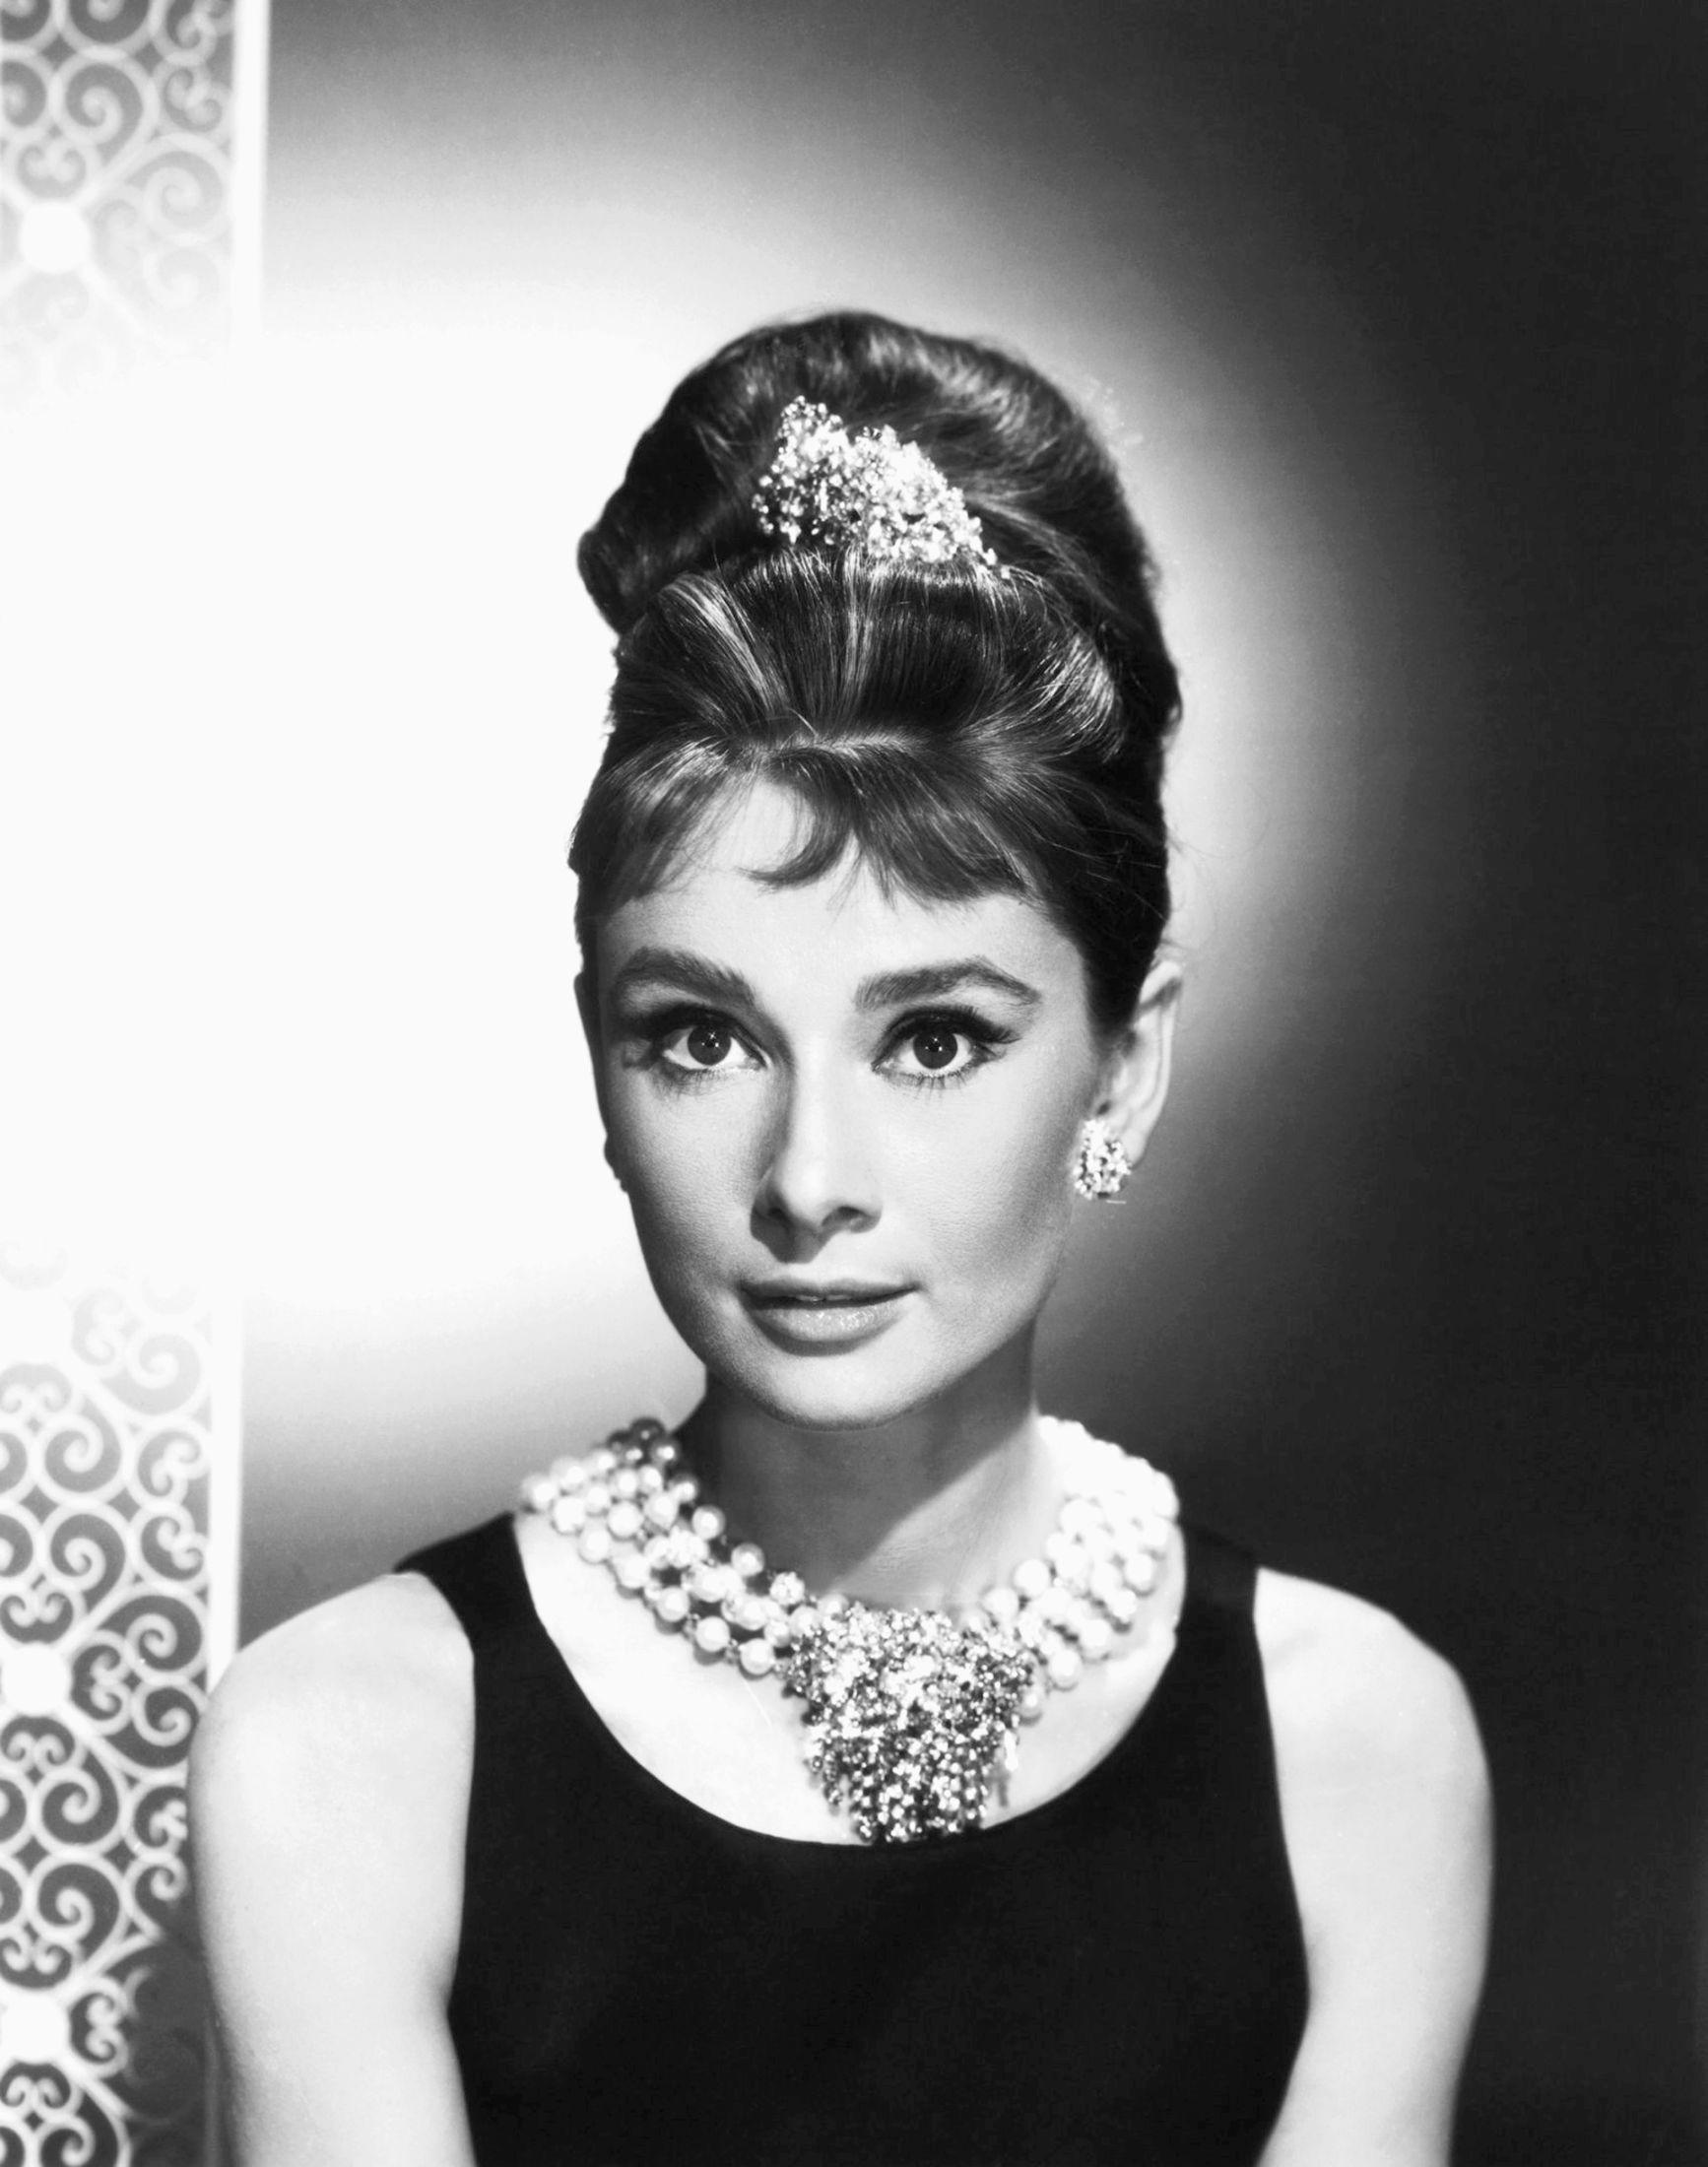 IKONISK: Her er Audrey Hepburn på settet til «Breakfast at Tiffany's». Hun var kledd i kjole fra Givenchy. Foto: Getty Images.